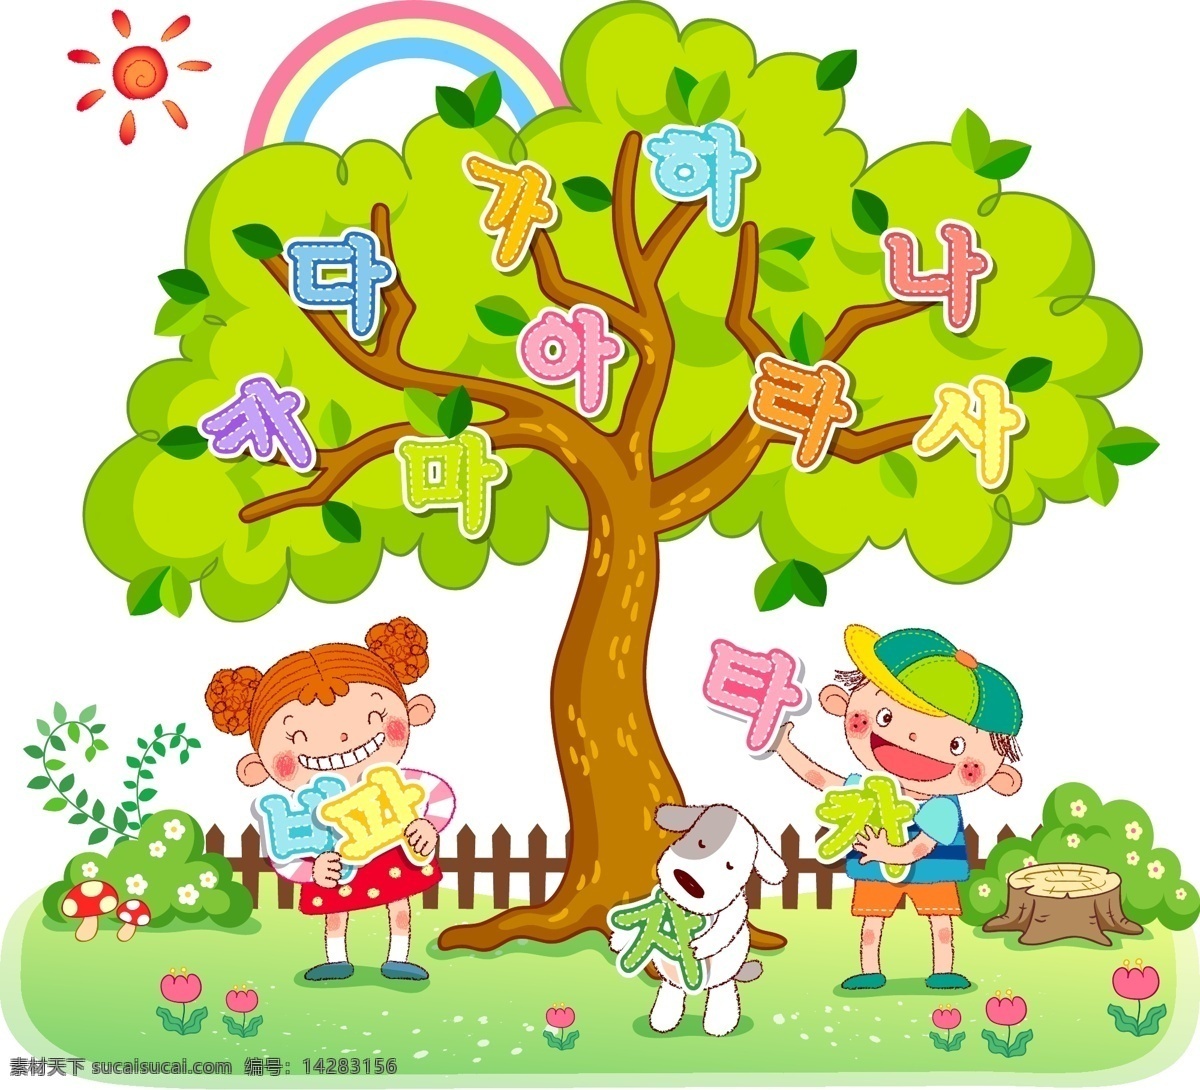 大树下 孩子 大树 卡通 可爱 小狗 矢量图 矢量人物